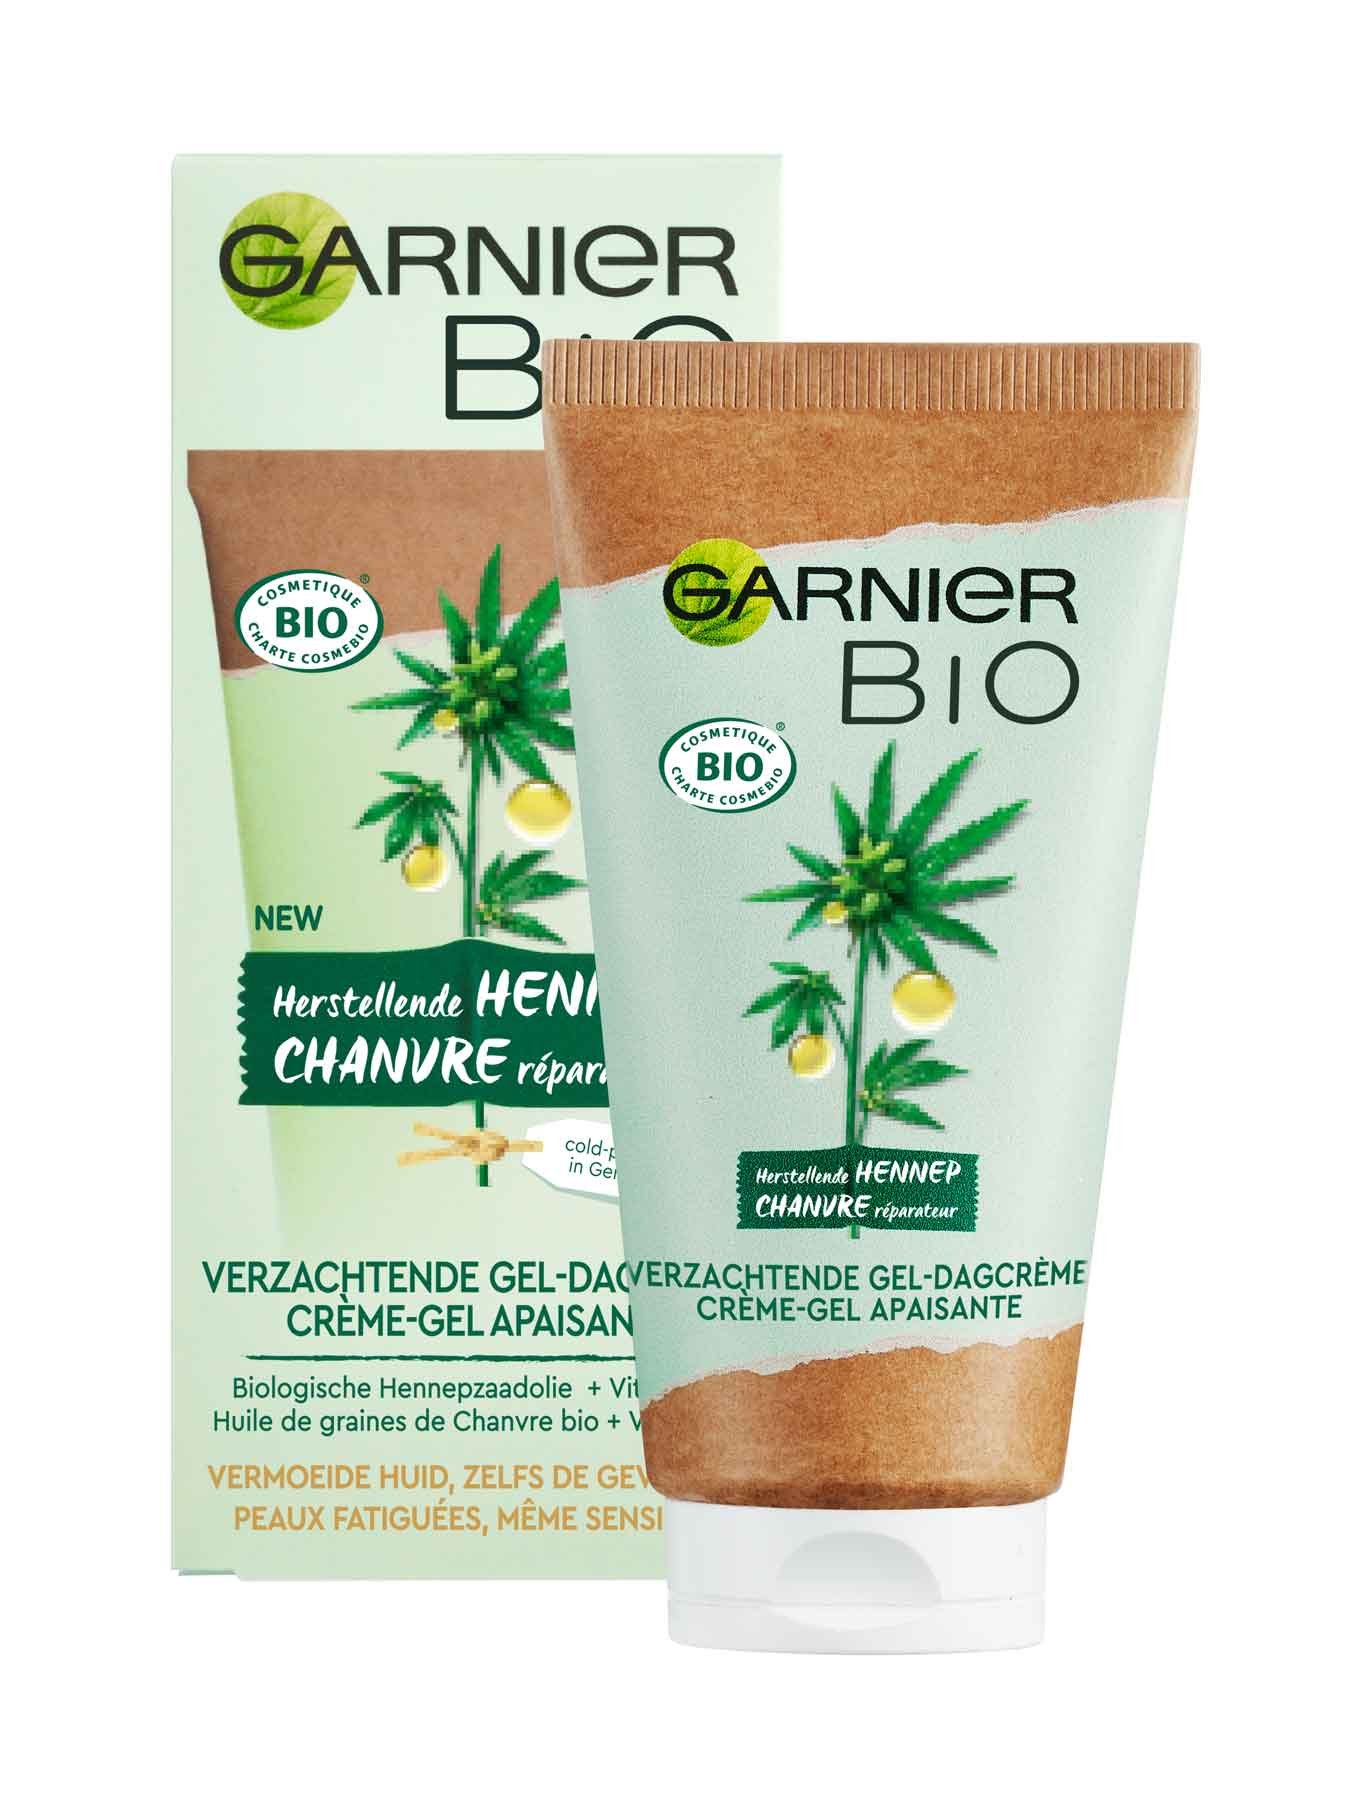 Garnier Bio Chanvre réparateur crème-gel apaisante